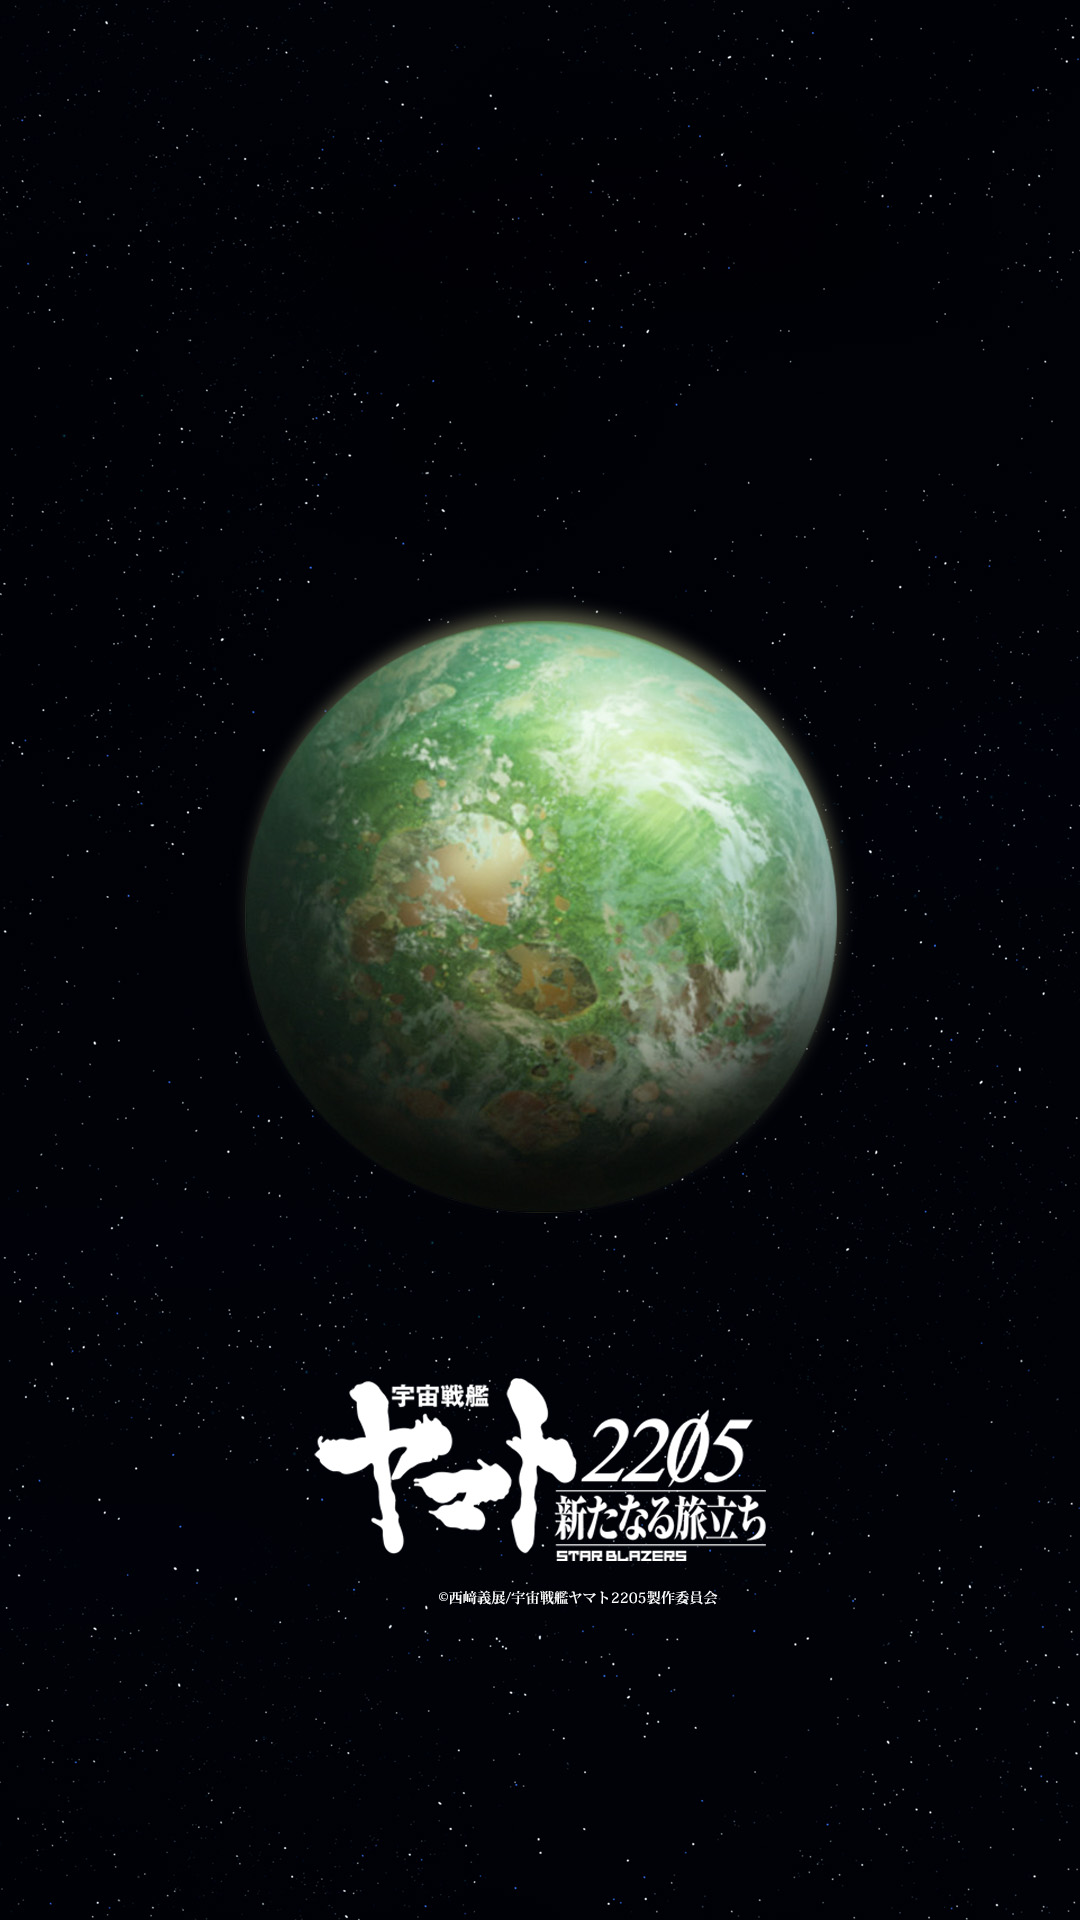 宇宙戦艦ヤマト25 新たなる旅立ち Blu Ray Dvd第2巻 3月29日発売